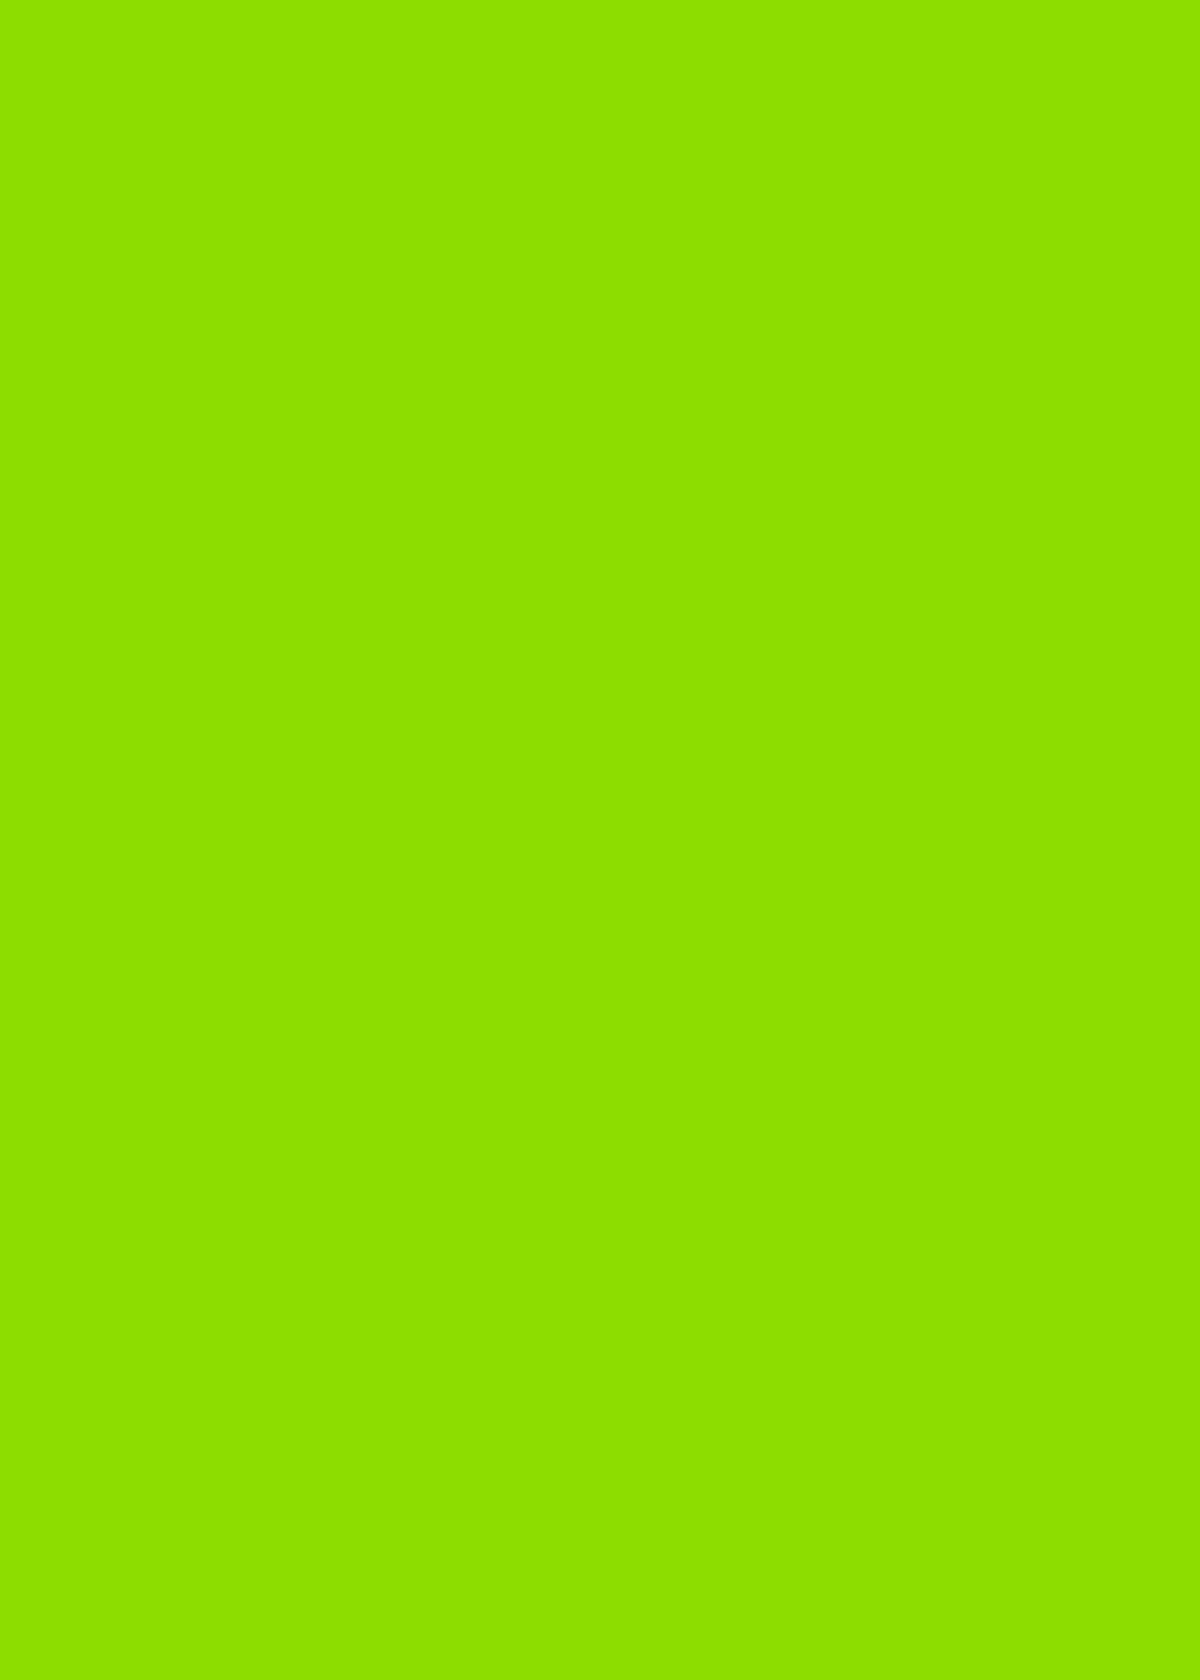 绿色 纯色背景高清壁纸 可设置聊天背景图 微博版图 原创高清